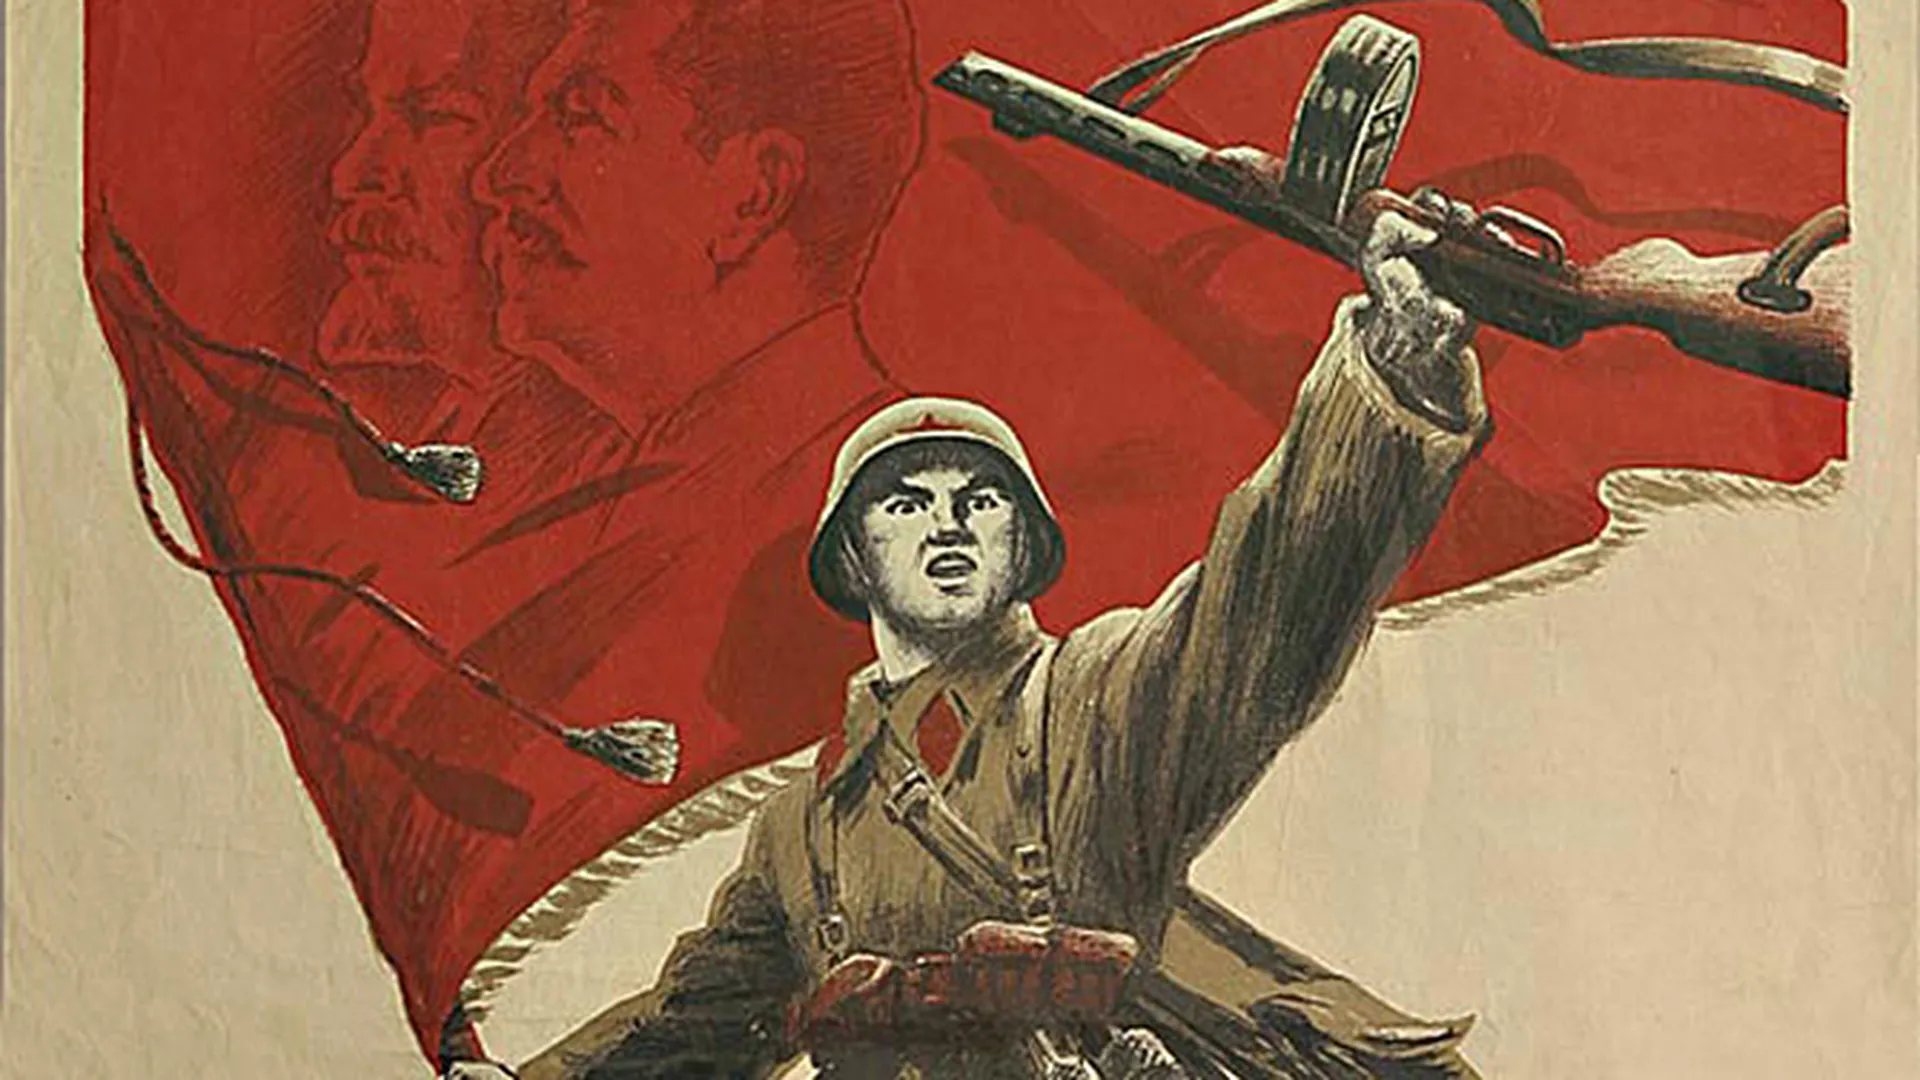 Будет сильная победа. Красная армия. Плакат на военную тему. Советские военные плакаты. Коммунистические плакаты.